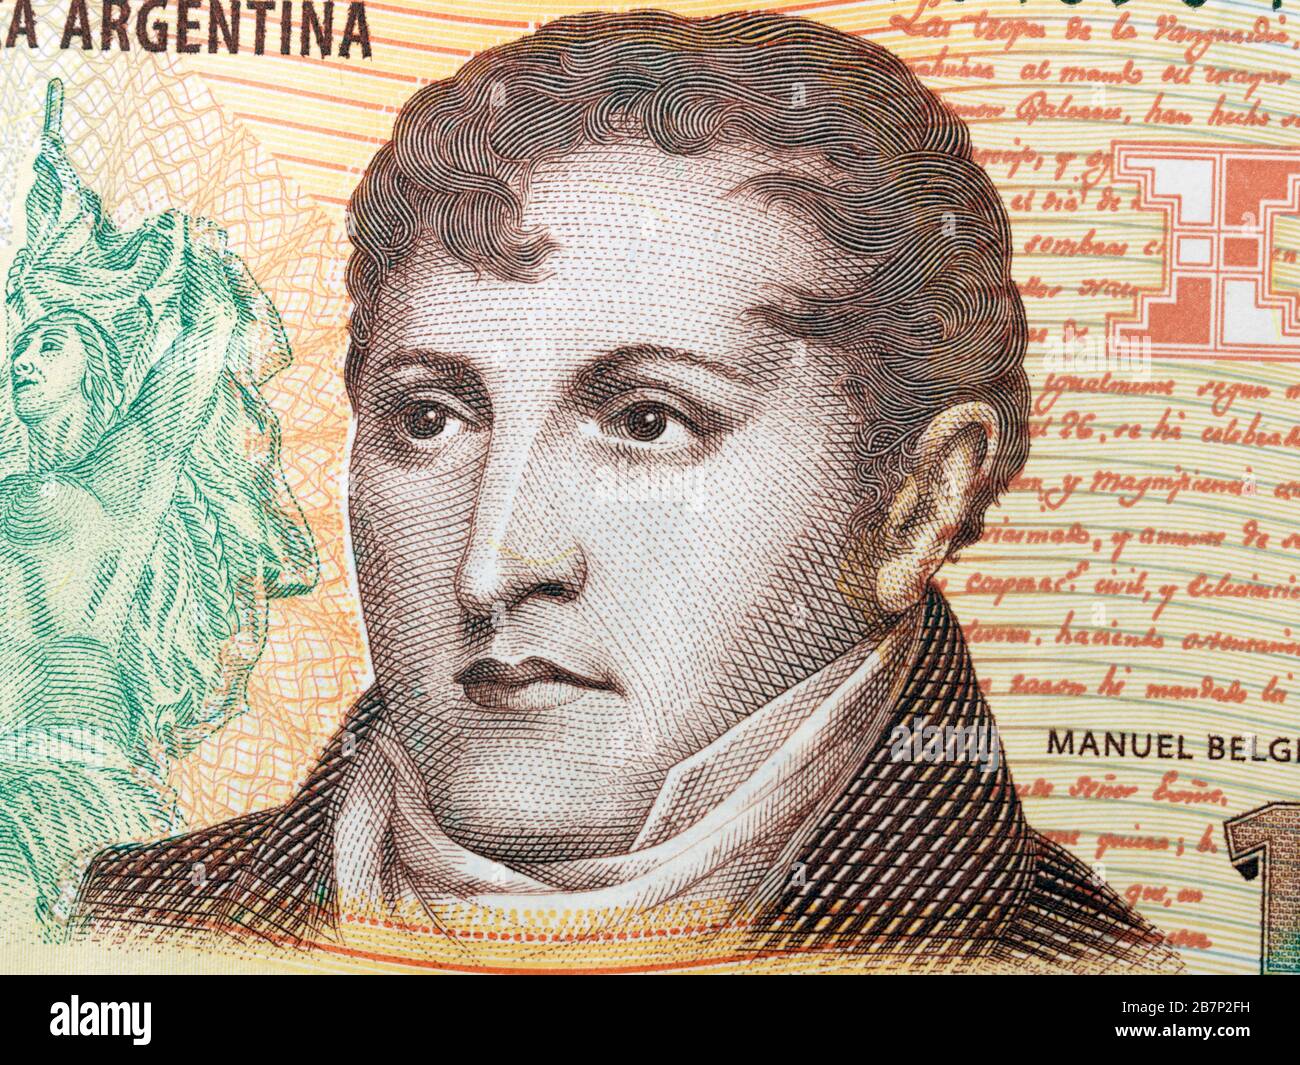 Banco de la República Argentina diez Peso Banknotte representando a Manuel  Belgrano 1770-1820 figura política y general revolucionario que creó la  Bandera Fotografía de stock - Alamy